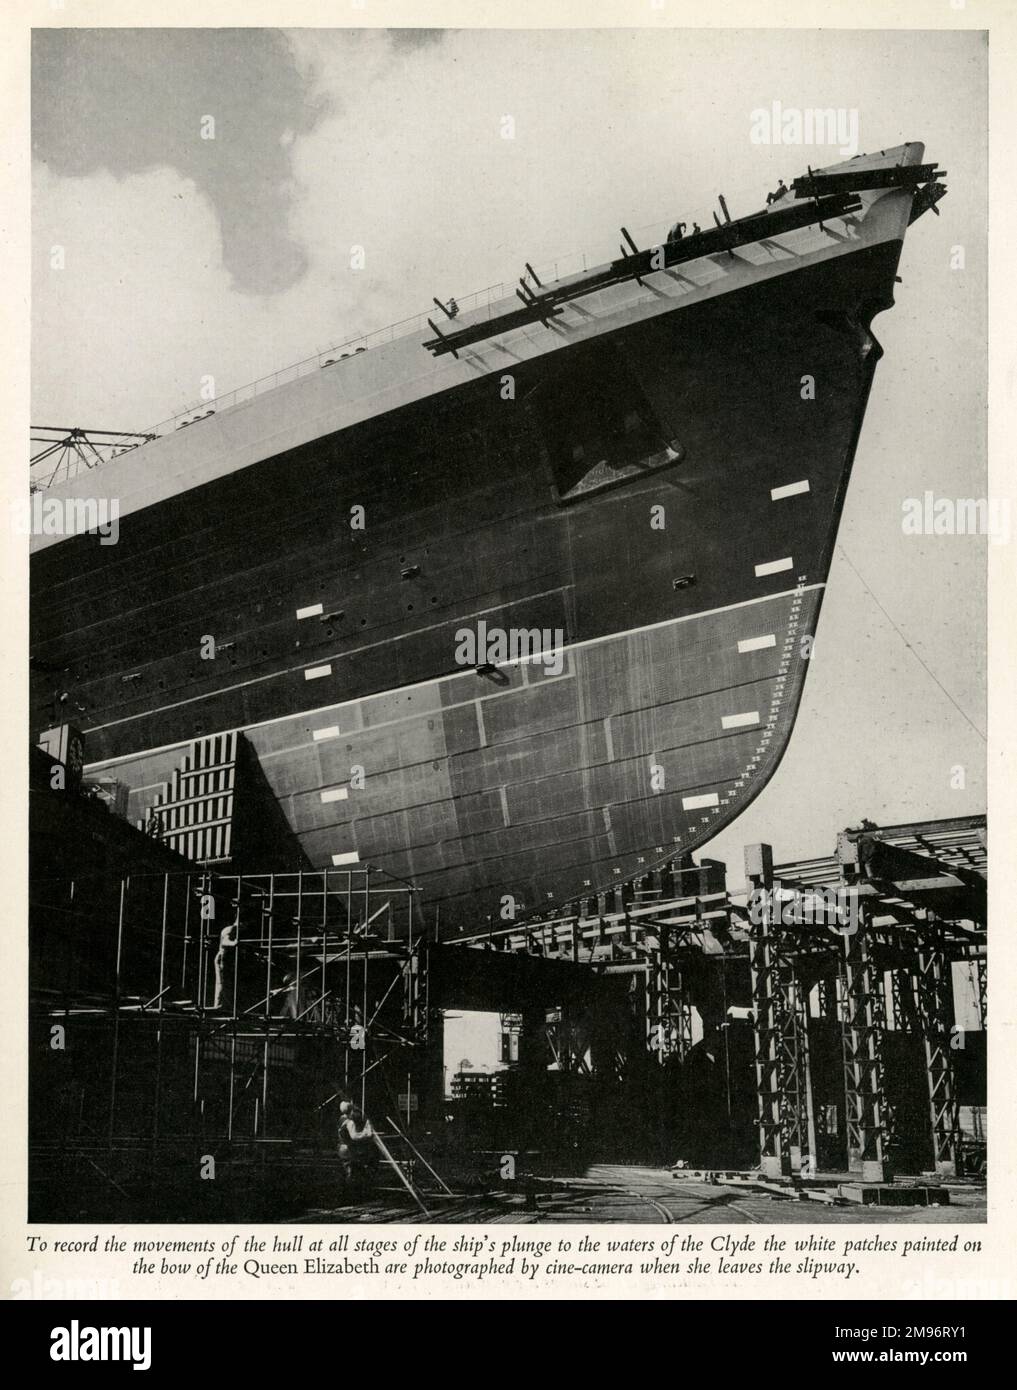 Pour enregistrer les mouvements de la coque à toutes les étapes de la plongée du navire dans les eaux de la Clyde, les patchs blancs peints sur l'arc de la reine Elizabeth sont photographiés par une caméra ciné lorsqu'elle quitte la cale Banque D'Images